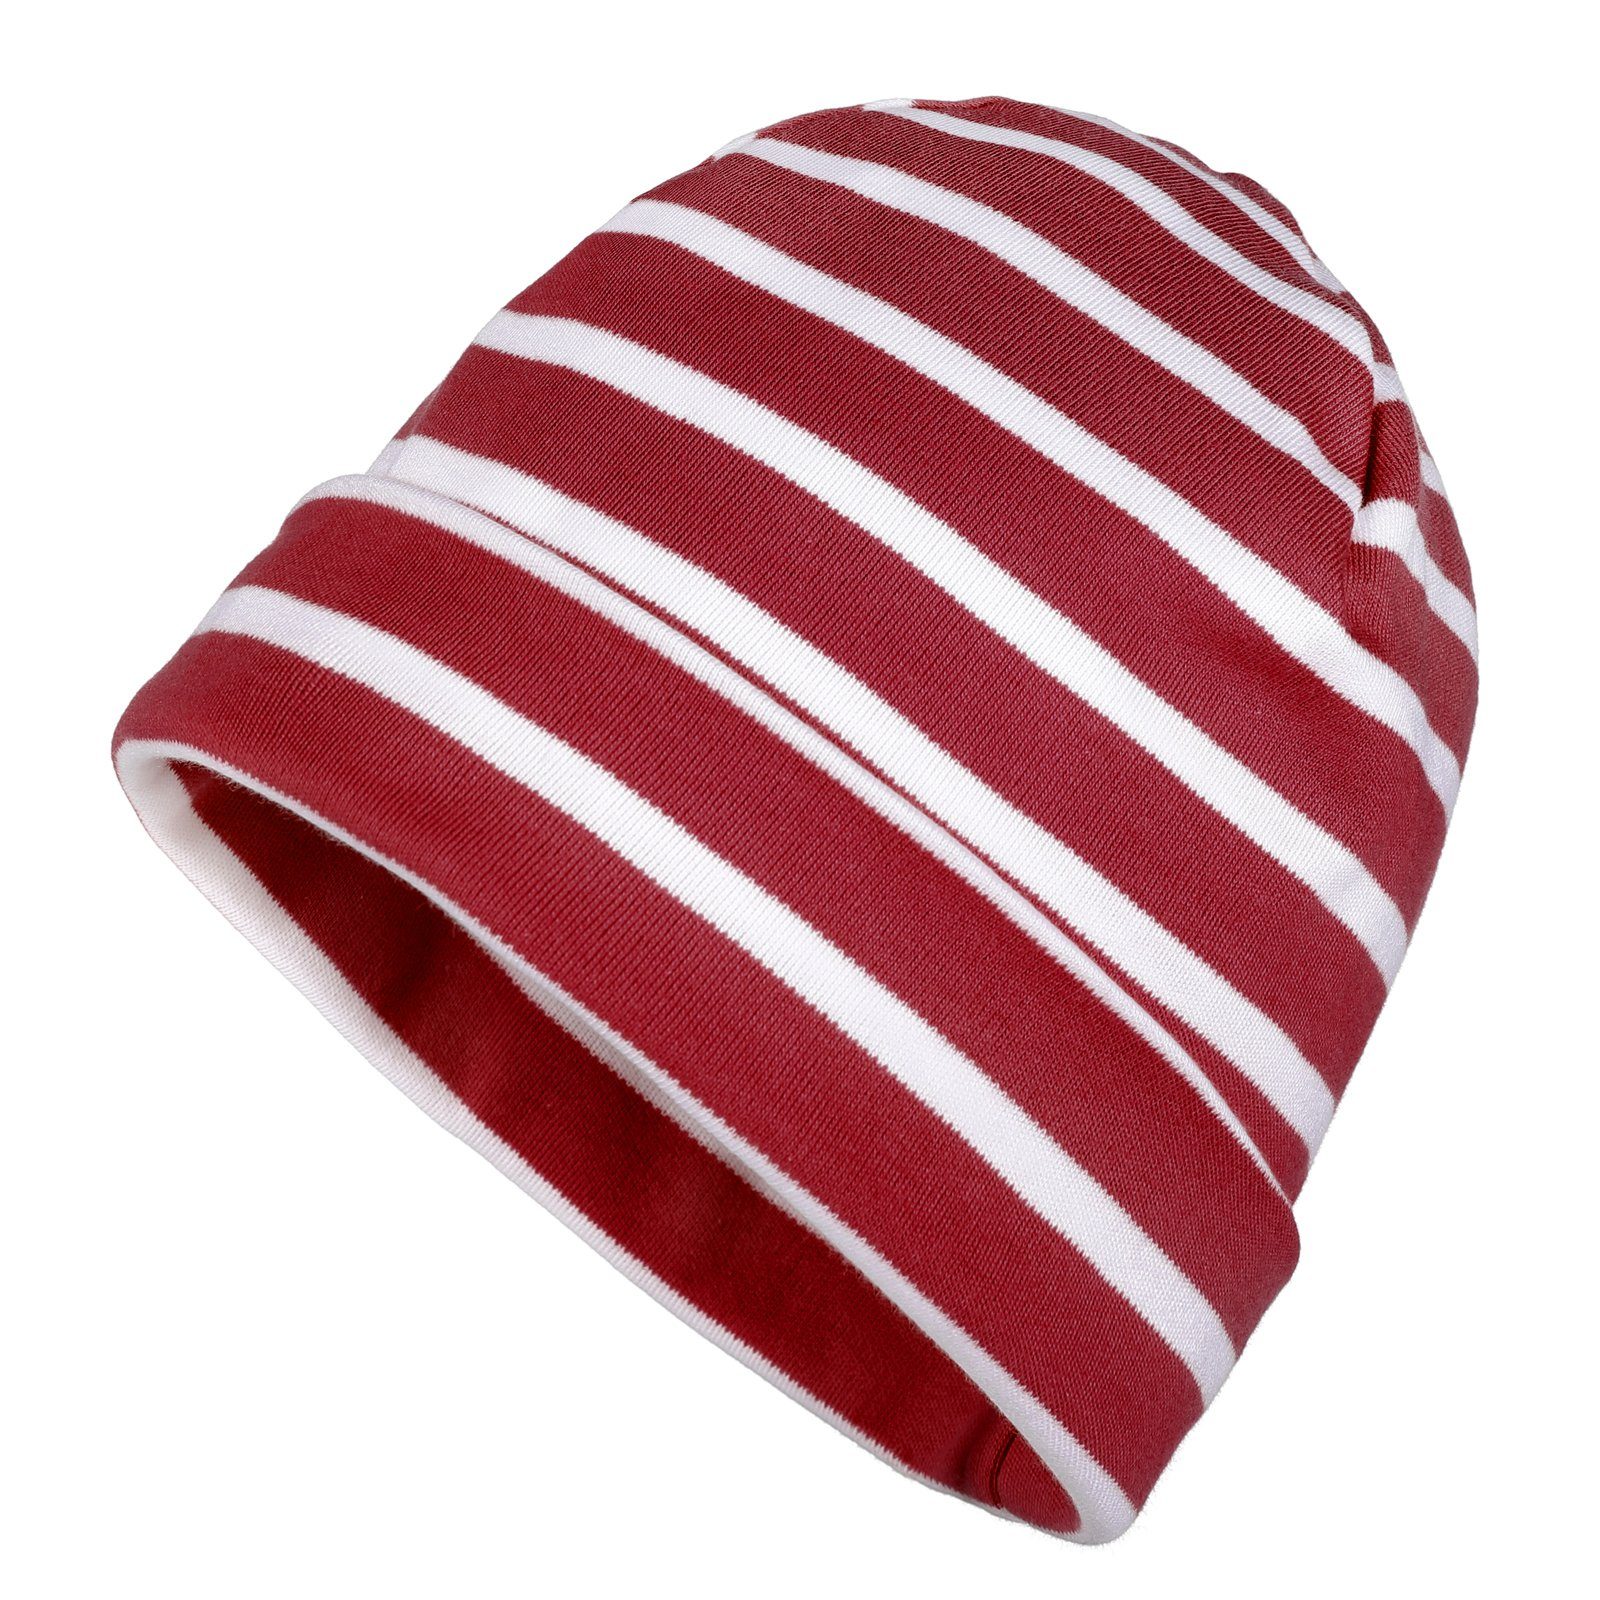 modAS Strickmütze Unisex Mütze Streifen für Kinder & Erwachsene - Ringelmütze Baumwolle (82) rotmelange / weiß